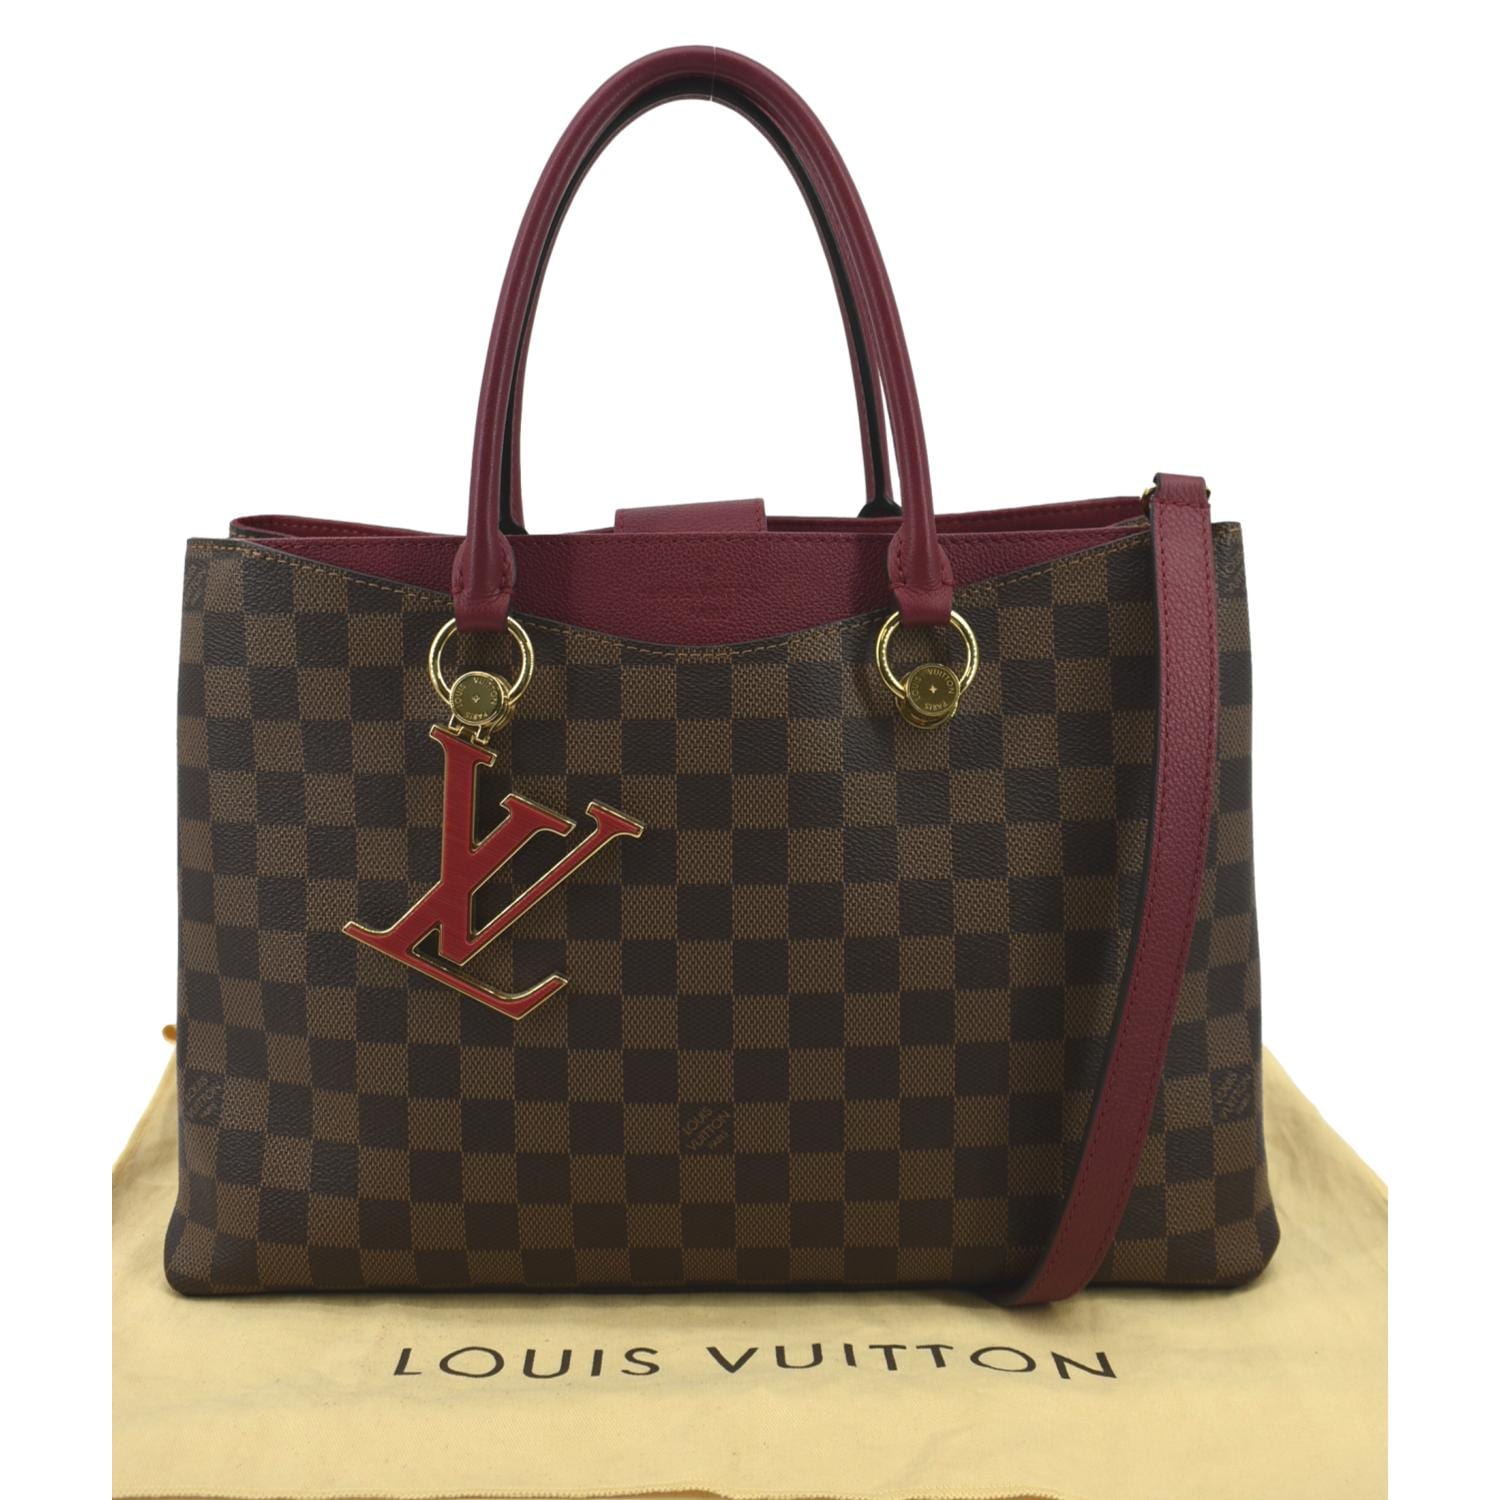 Authentic LOUIS VUITTON Damier LV Riverside N40052 Bag #260-004